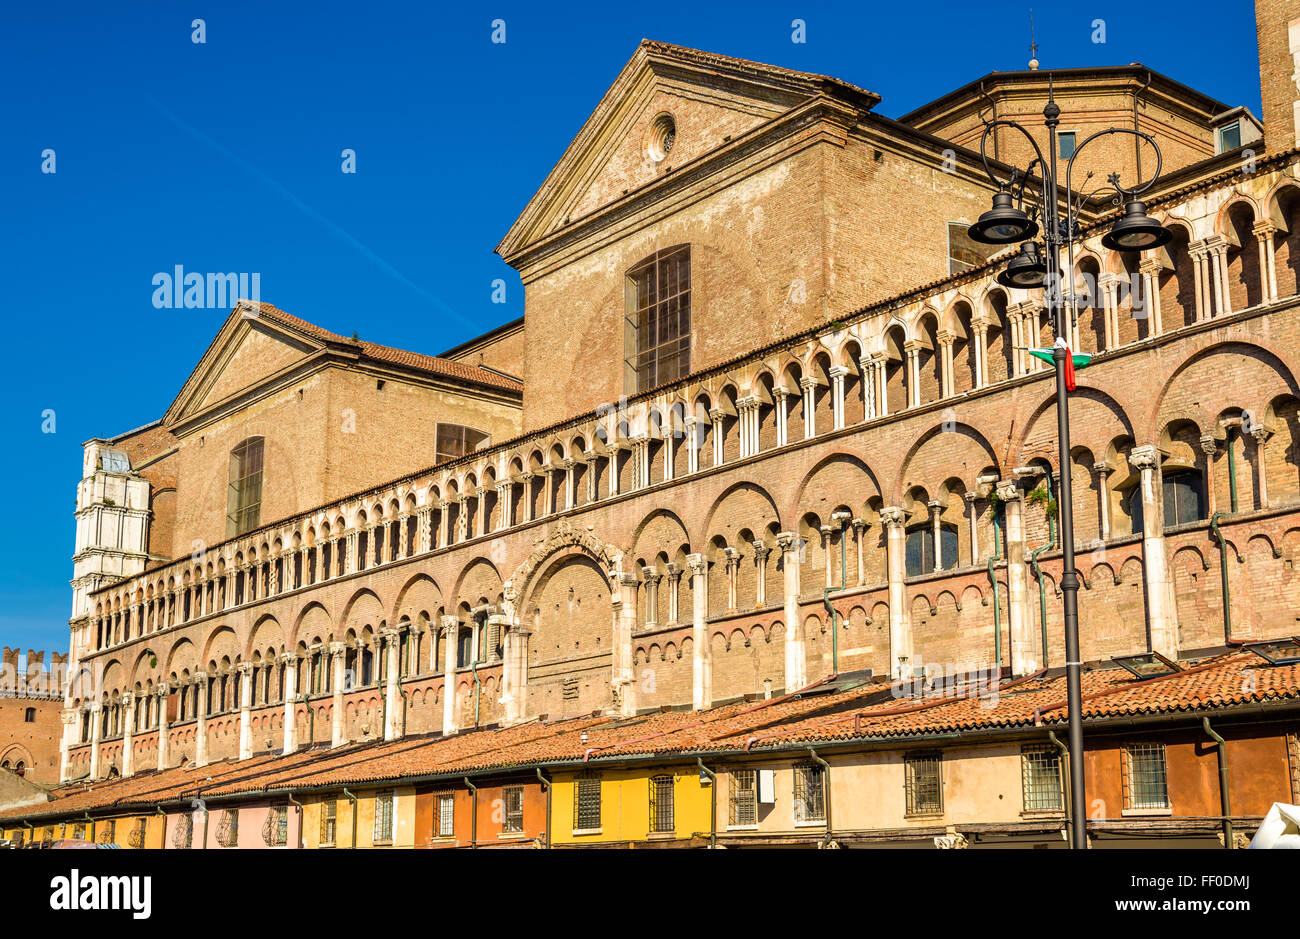 Basilica Cattedrale di San Giorgio in Ferrara, Italy Stock Photo